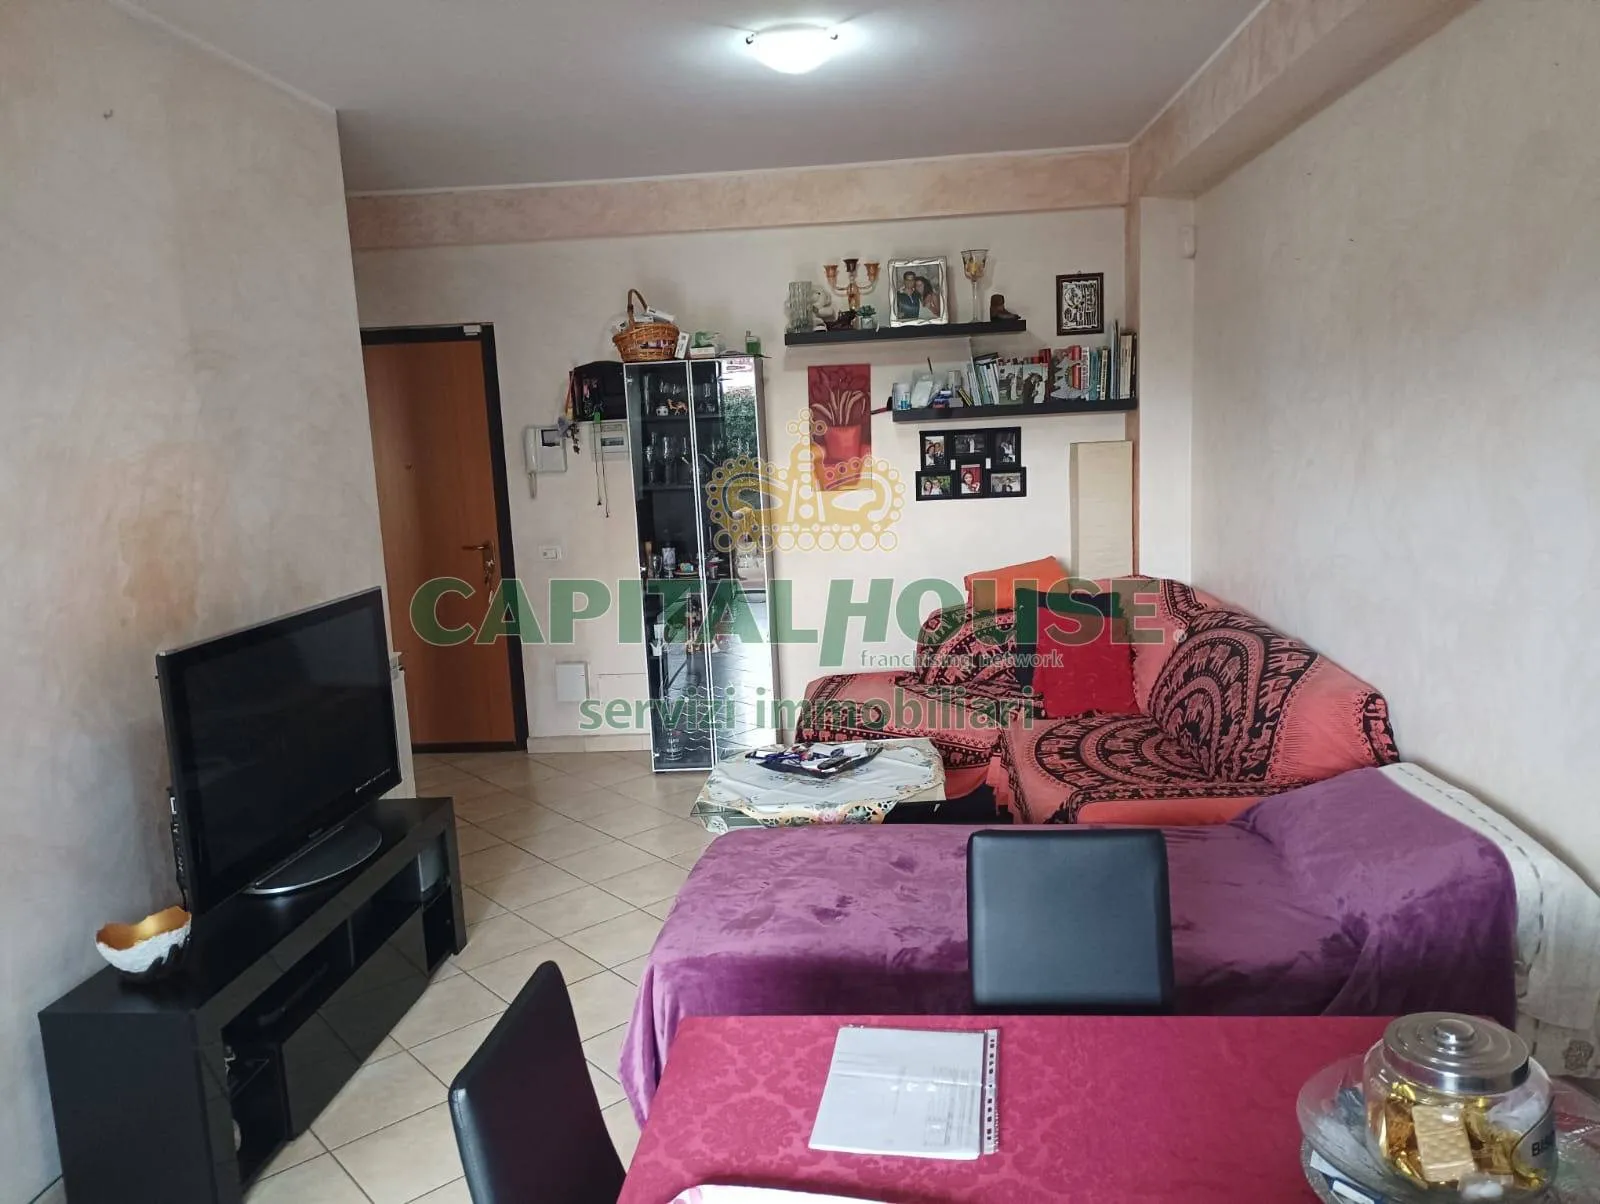 Immagine per Appartamento in vendita a Guidonia Montecelio